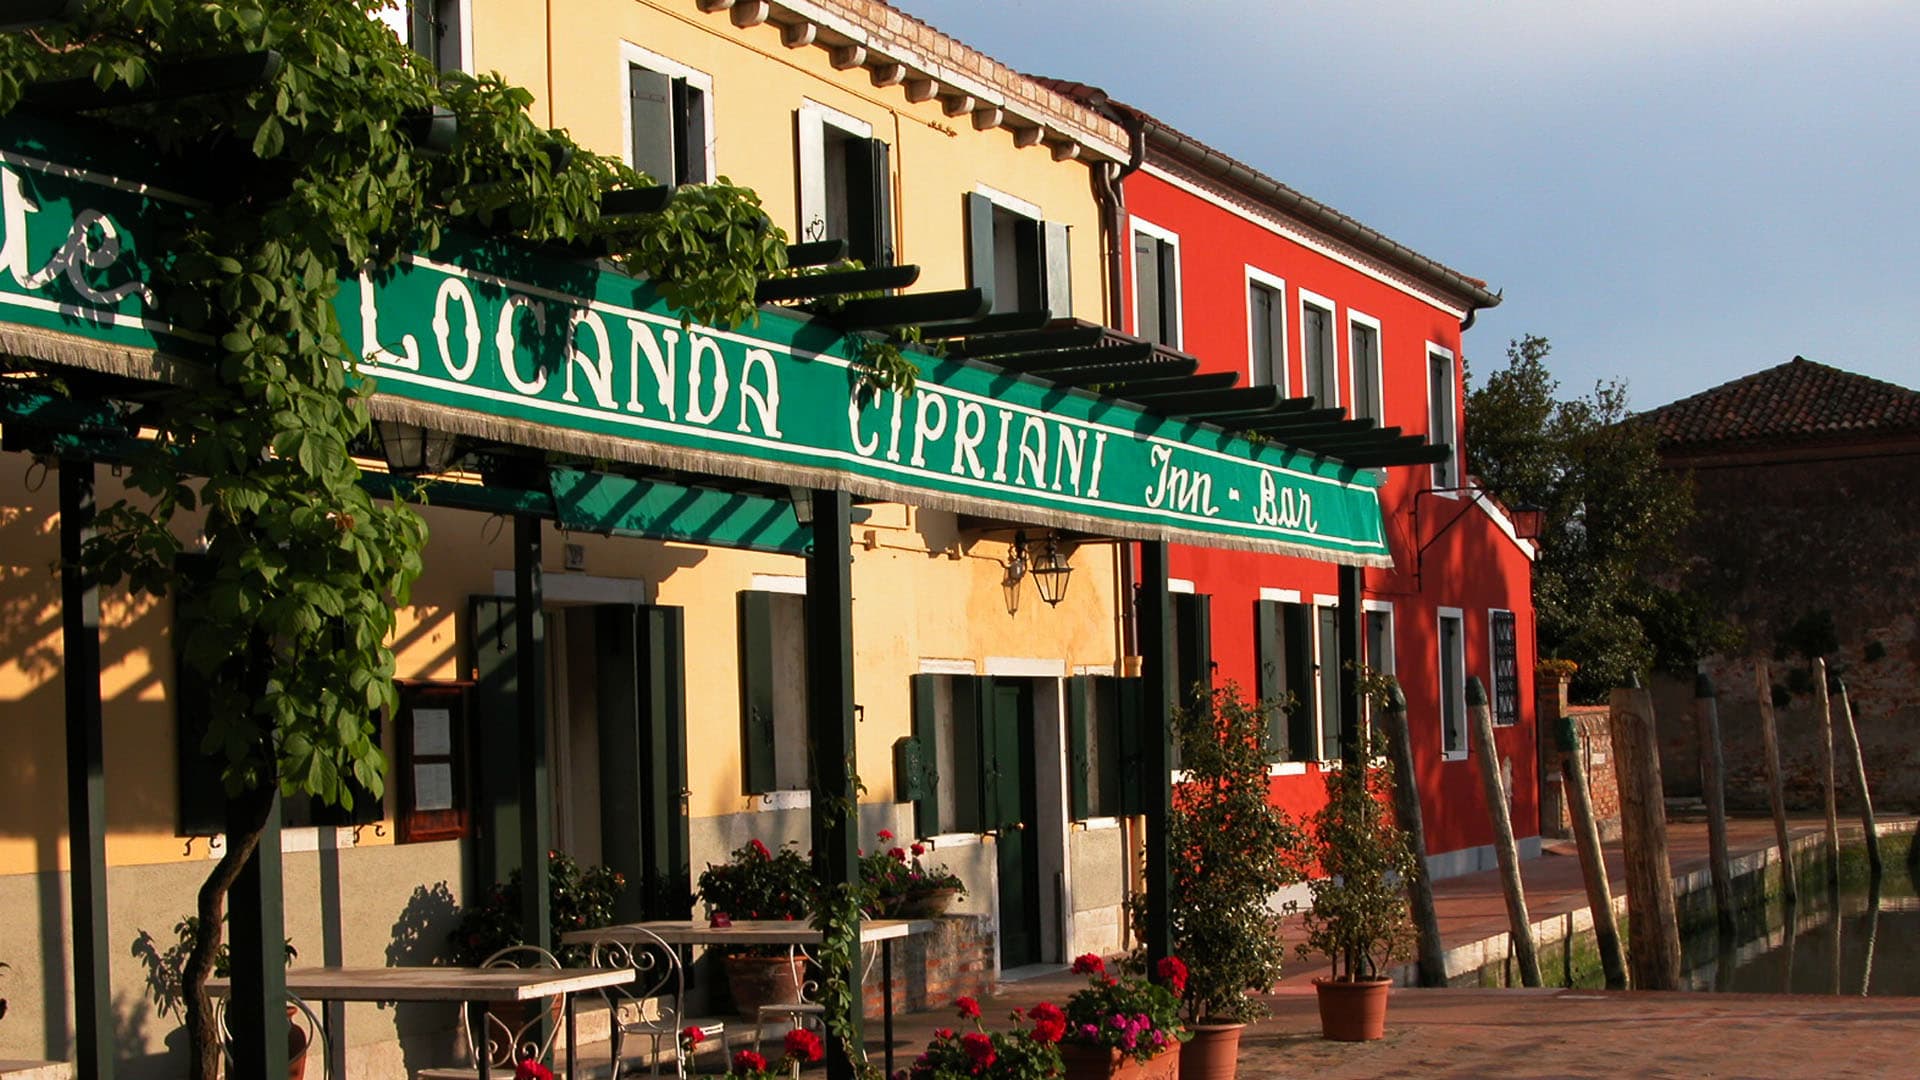 Locanda Cipriani - Torcello